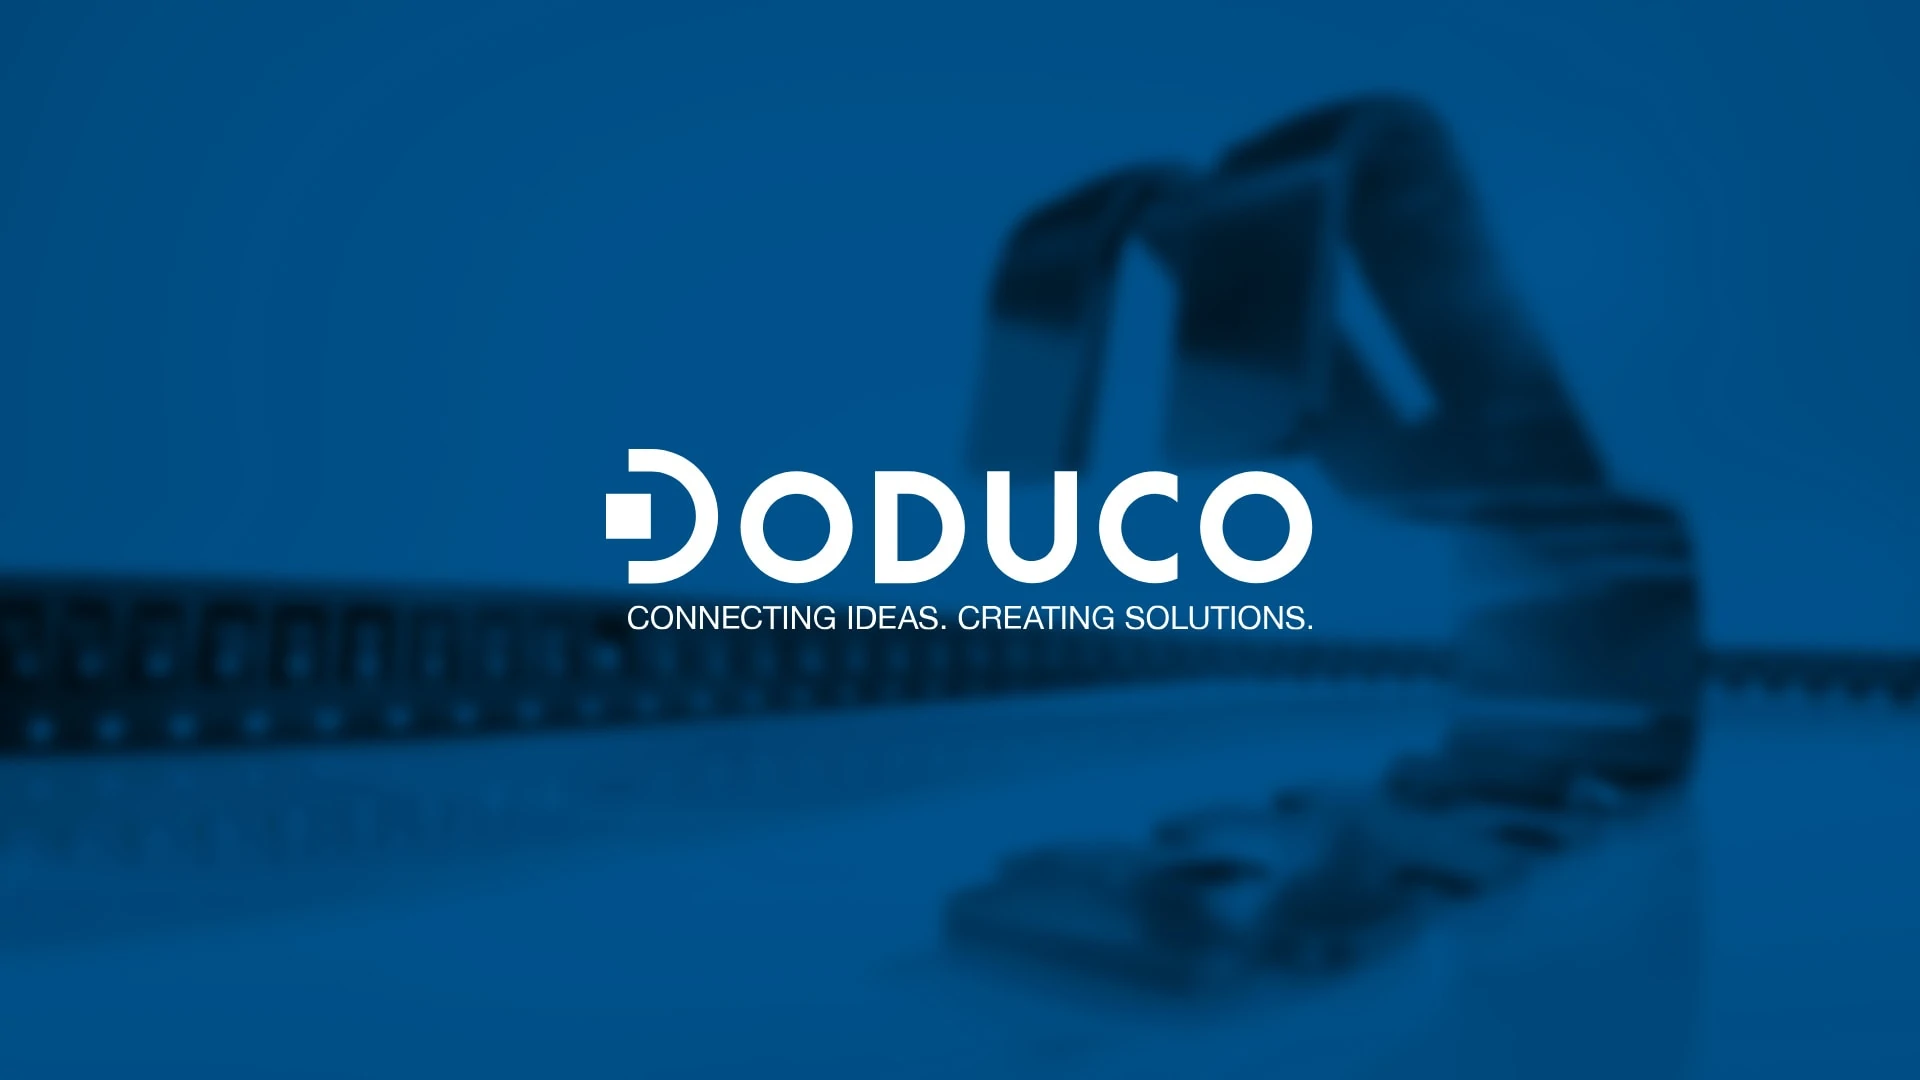 Webauftritt für Edelmetallverarbeitung DODUCO GmbH